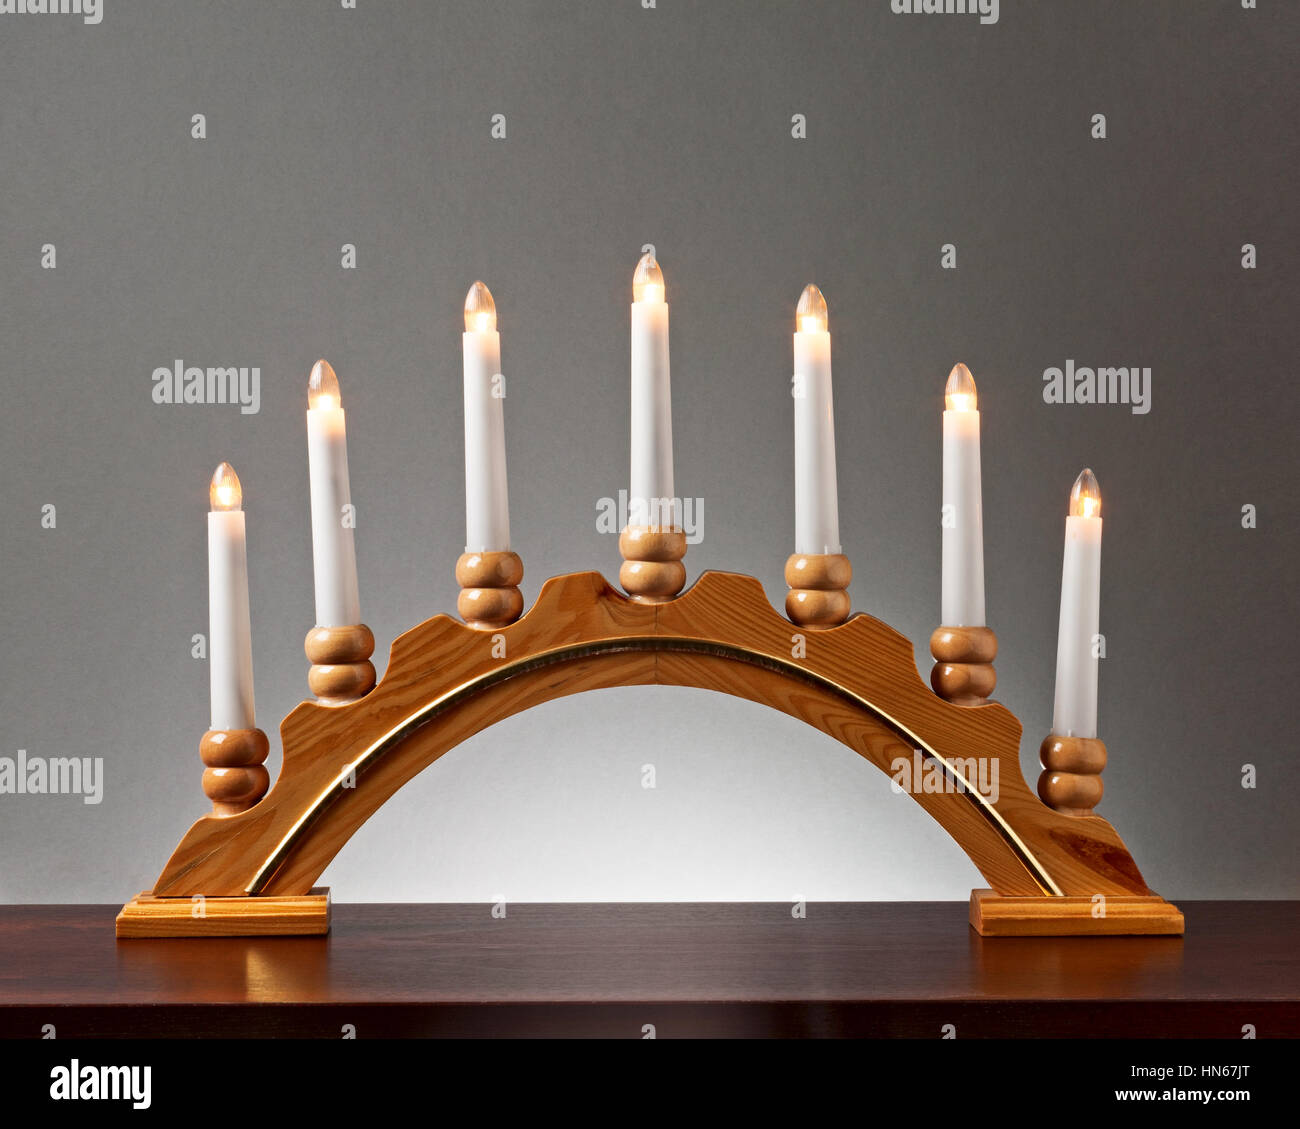 Weihnachten-Holz-Kerze-Halter mit Glühbirnen auf grauem Hintergrund, Beleuchtung und Dekoration für die Adventszeit Stockfoto